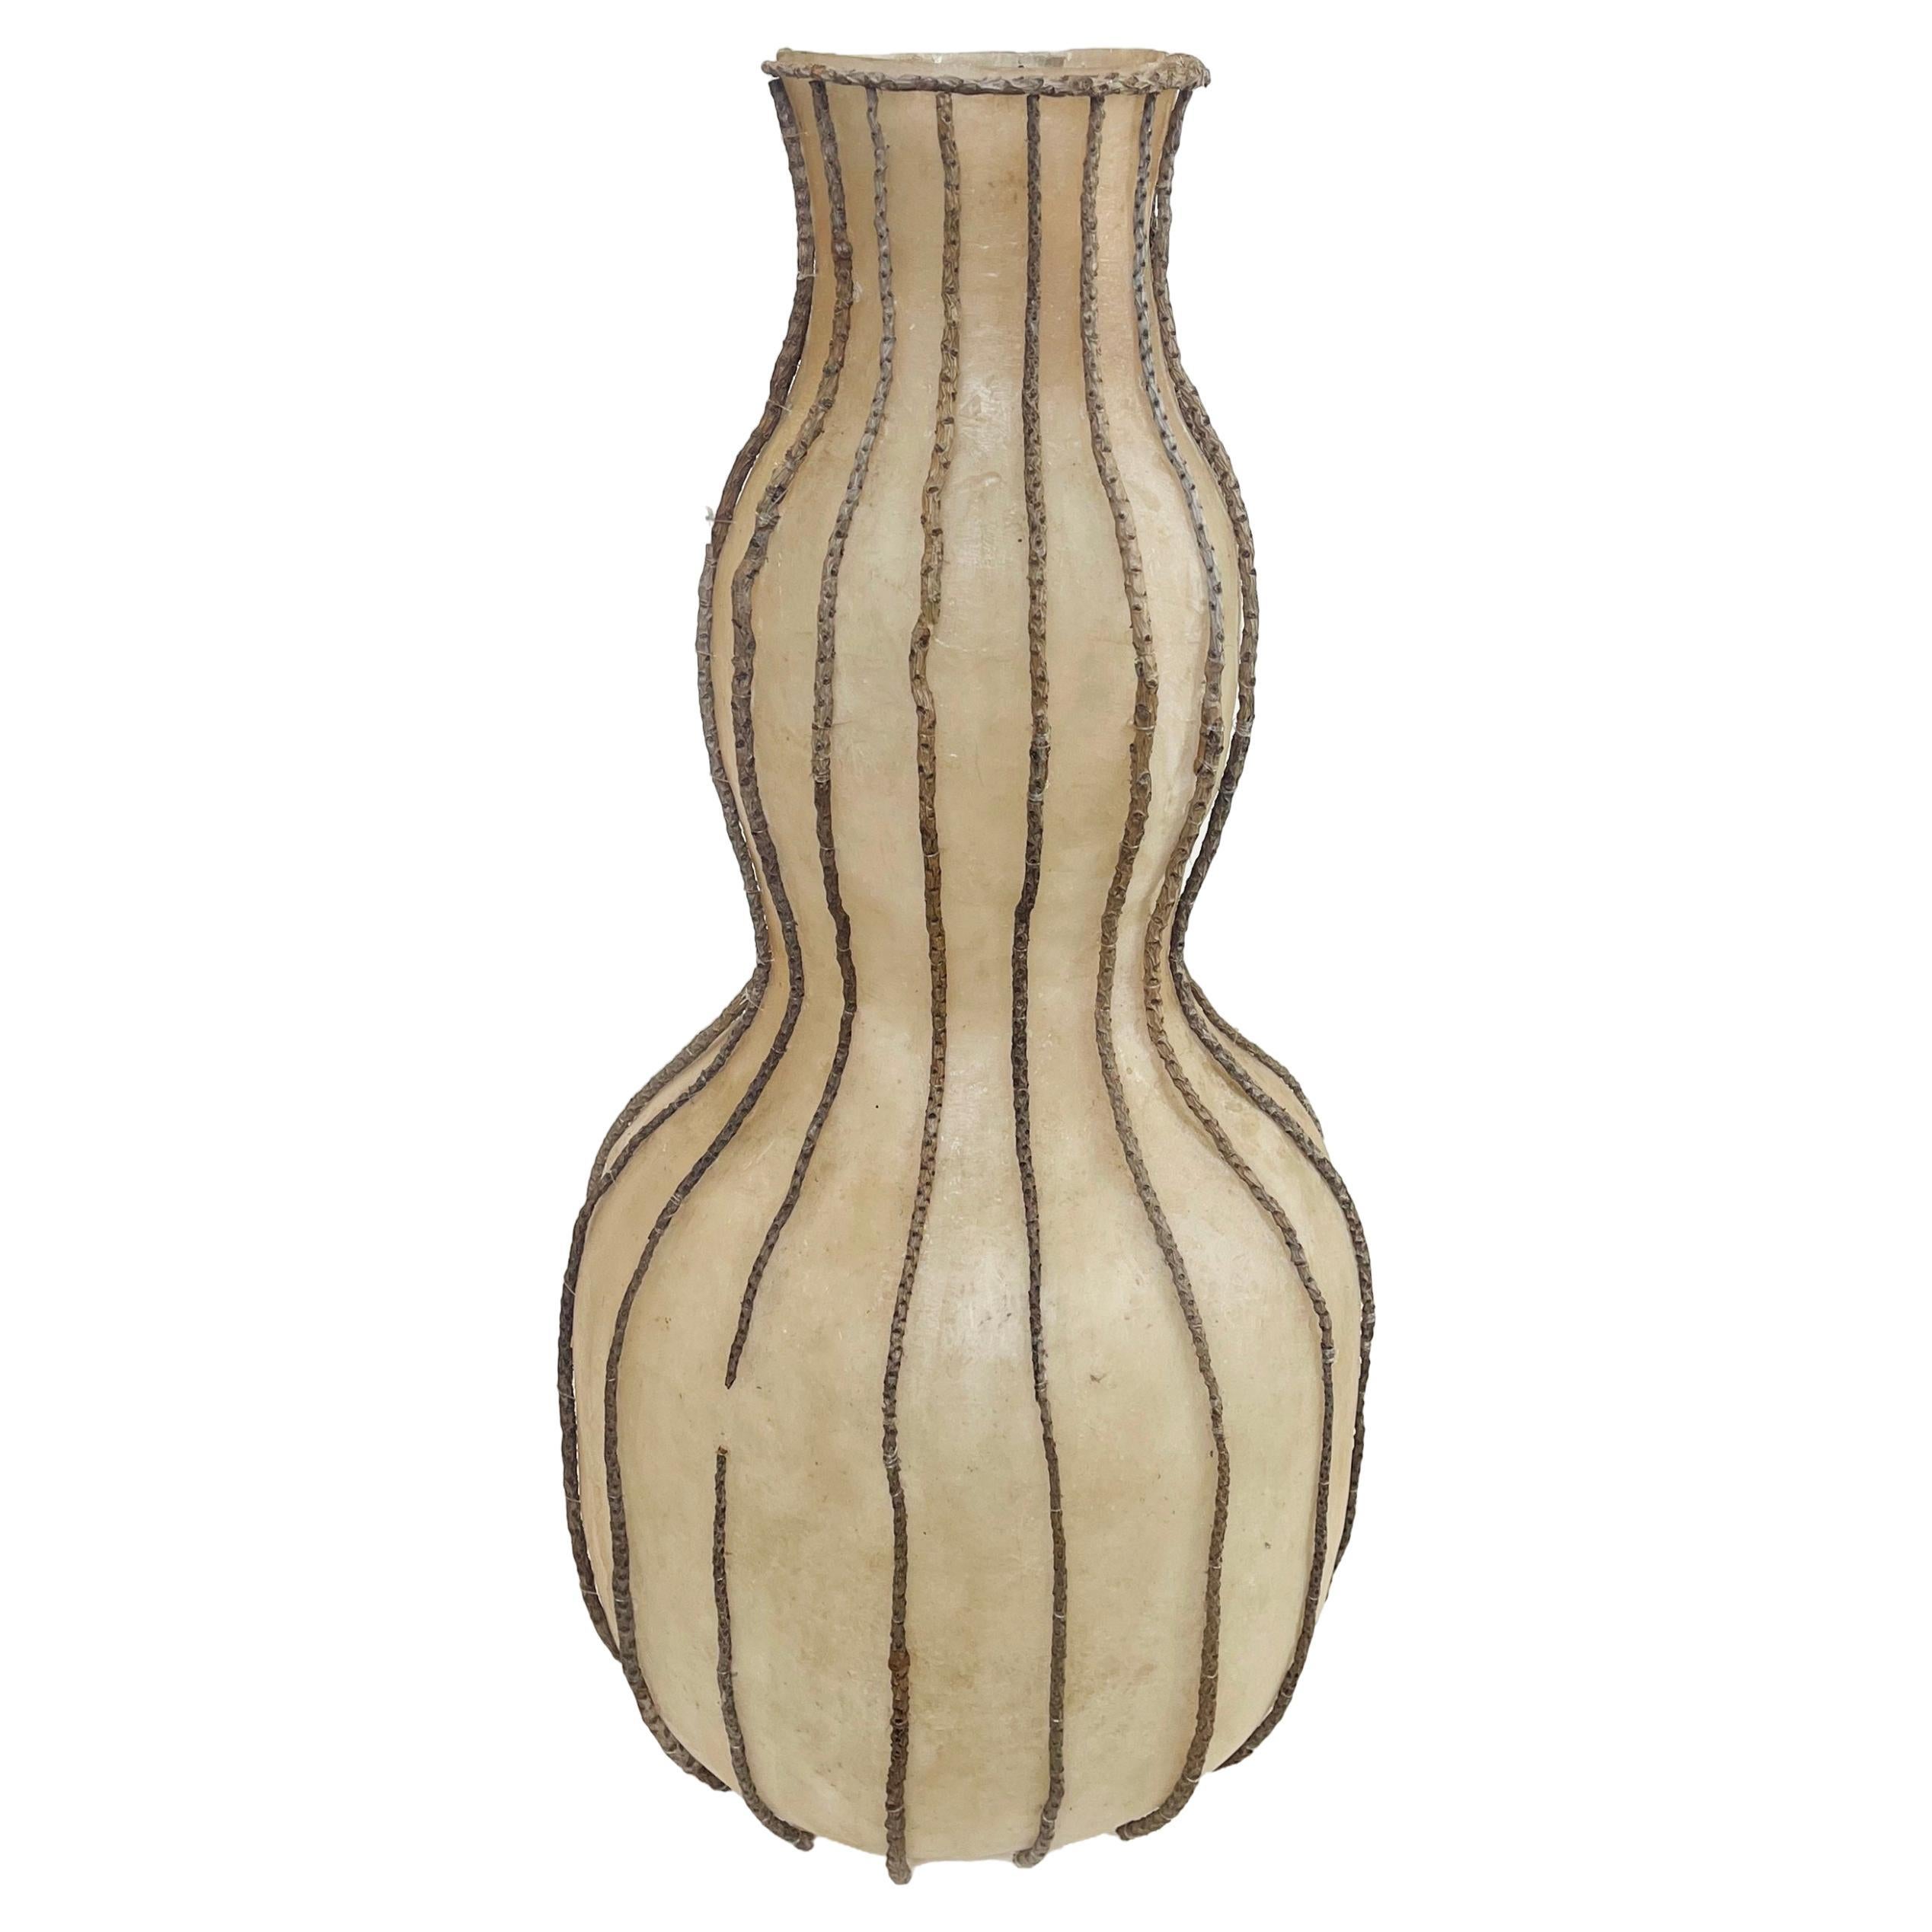 Modernes ethnisches Gefäß oder Vase im Stil afrikanischer Kunst aus Zweigen und Fiberglas, 1970er Jahre